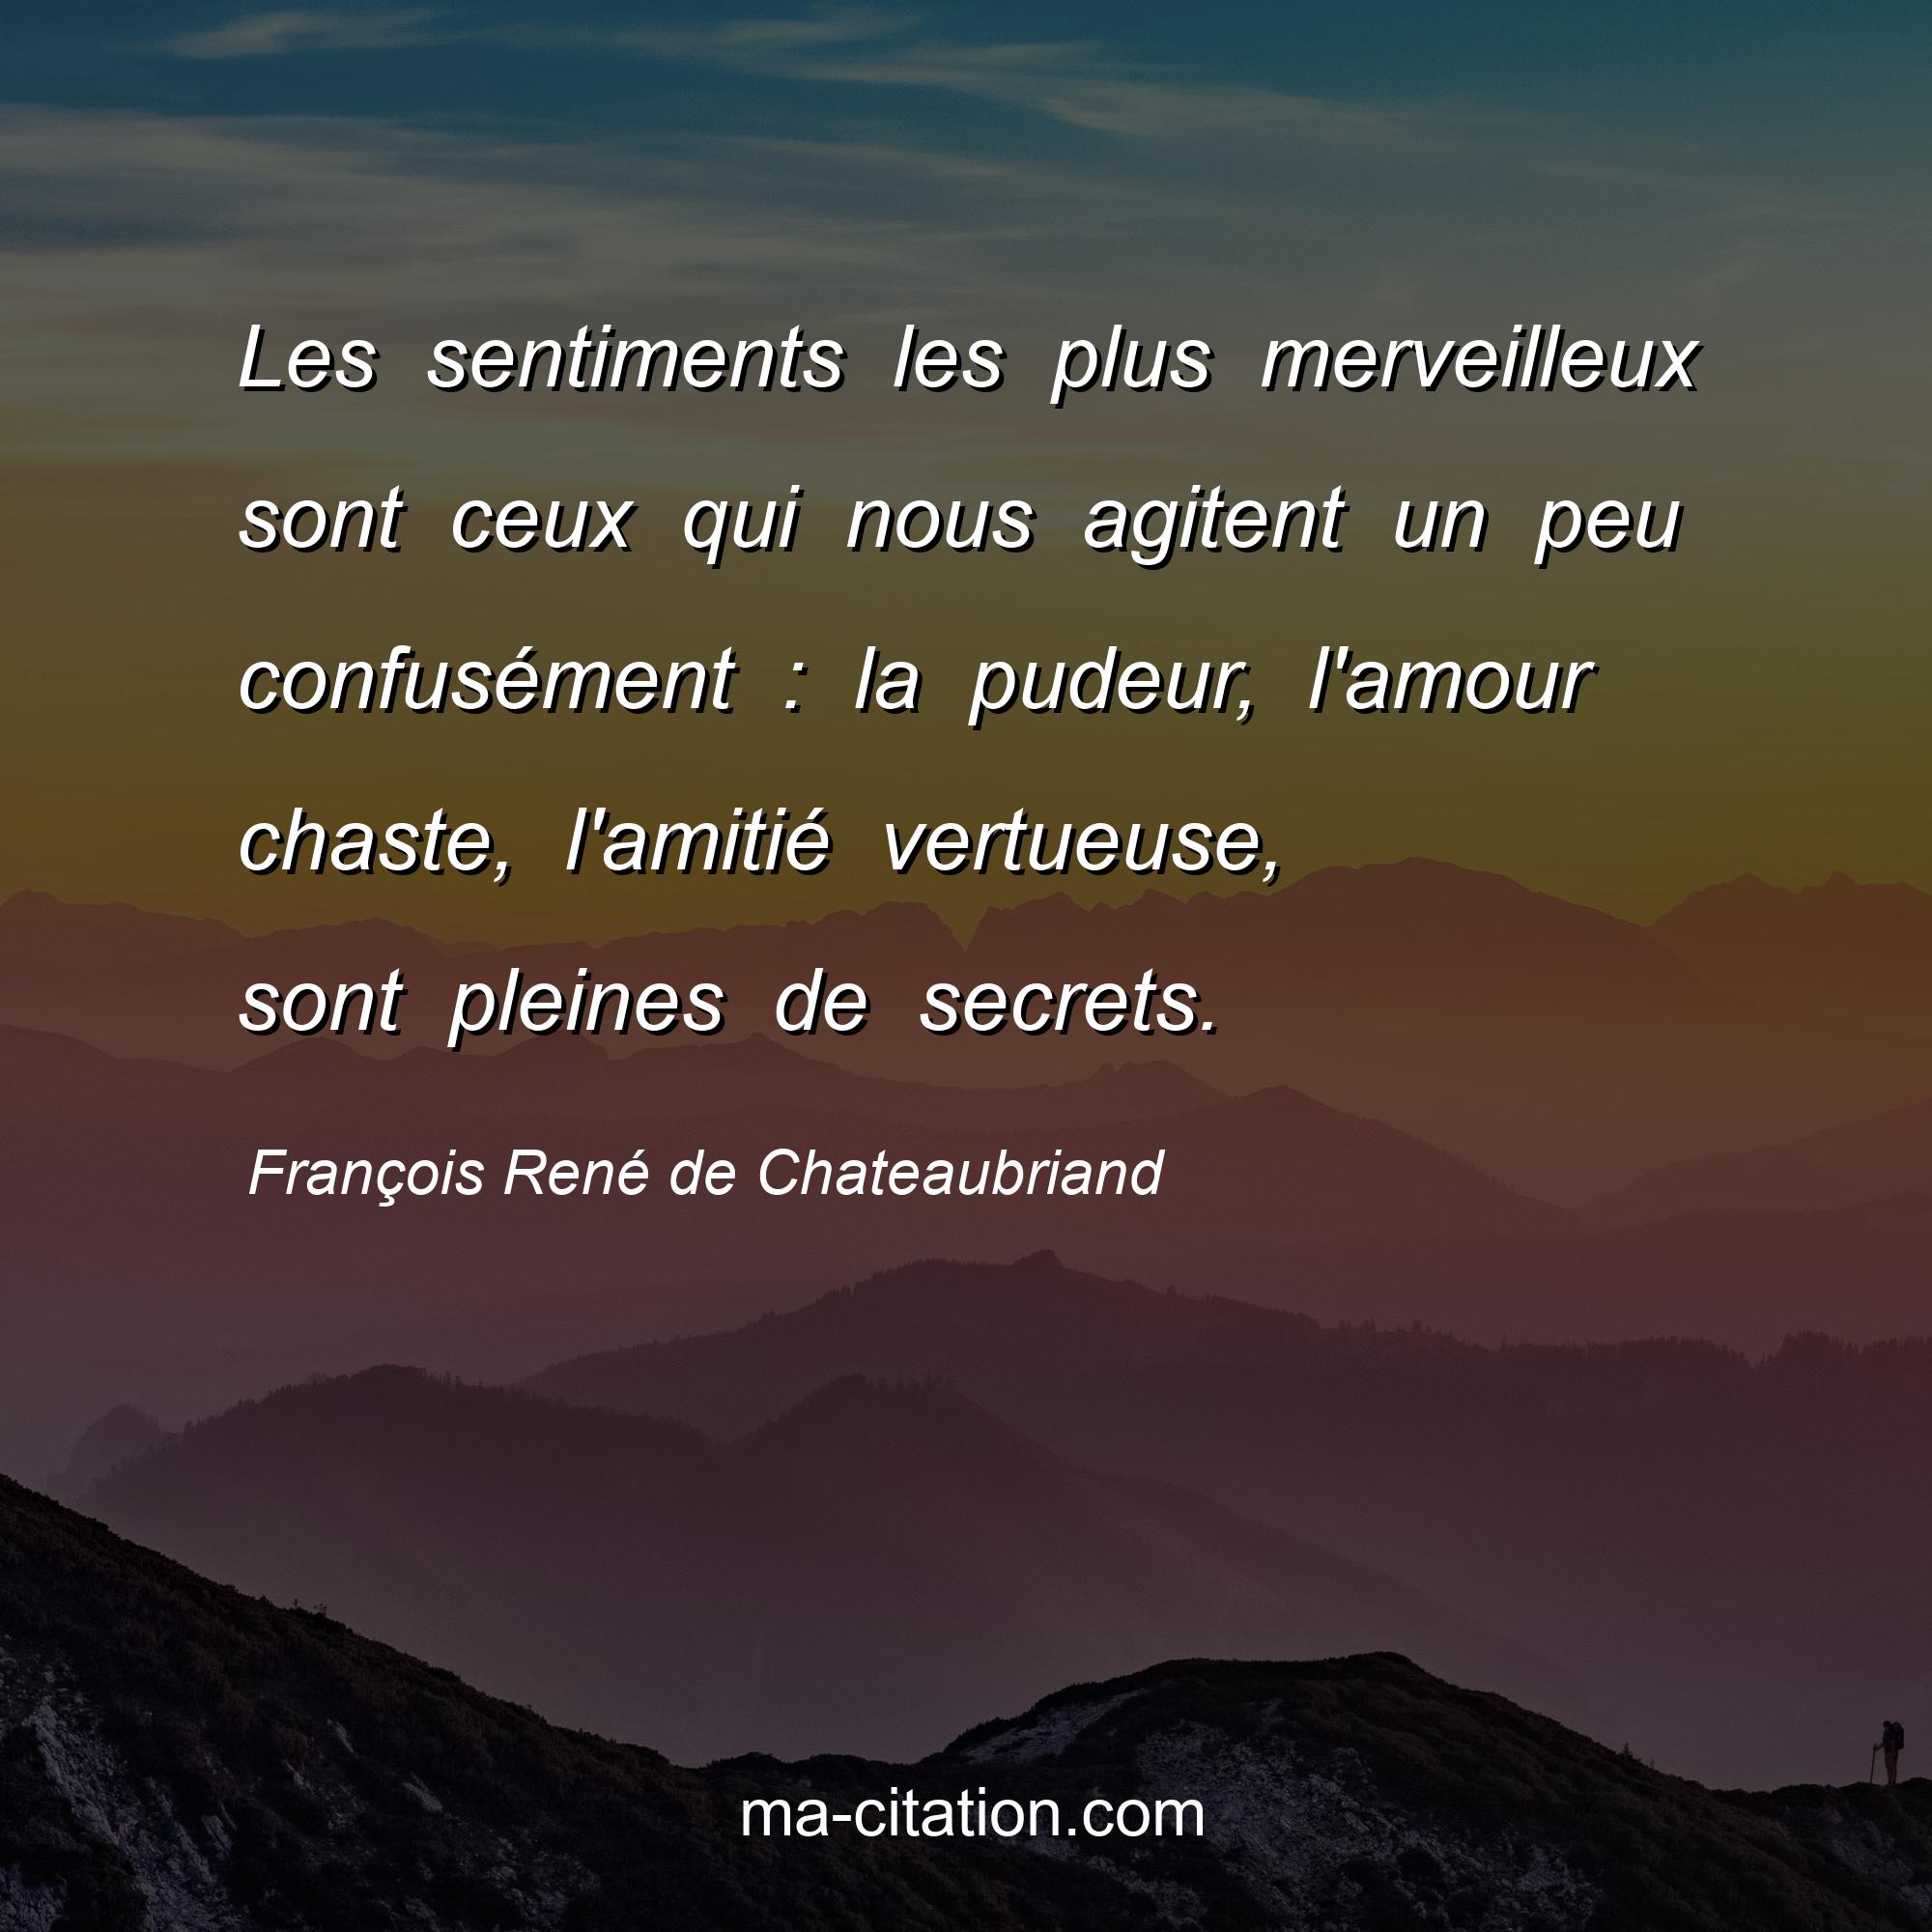 François René de Chateaubriand : Les sentiments les plus merveilleux sont ceux qui nous agitent un peu confusément : la pudeur, l'amour chaste, l'amitié vertueuse, sont pleines de secrets.